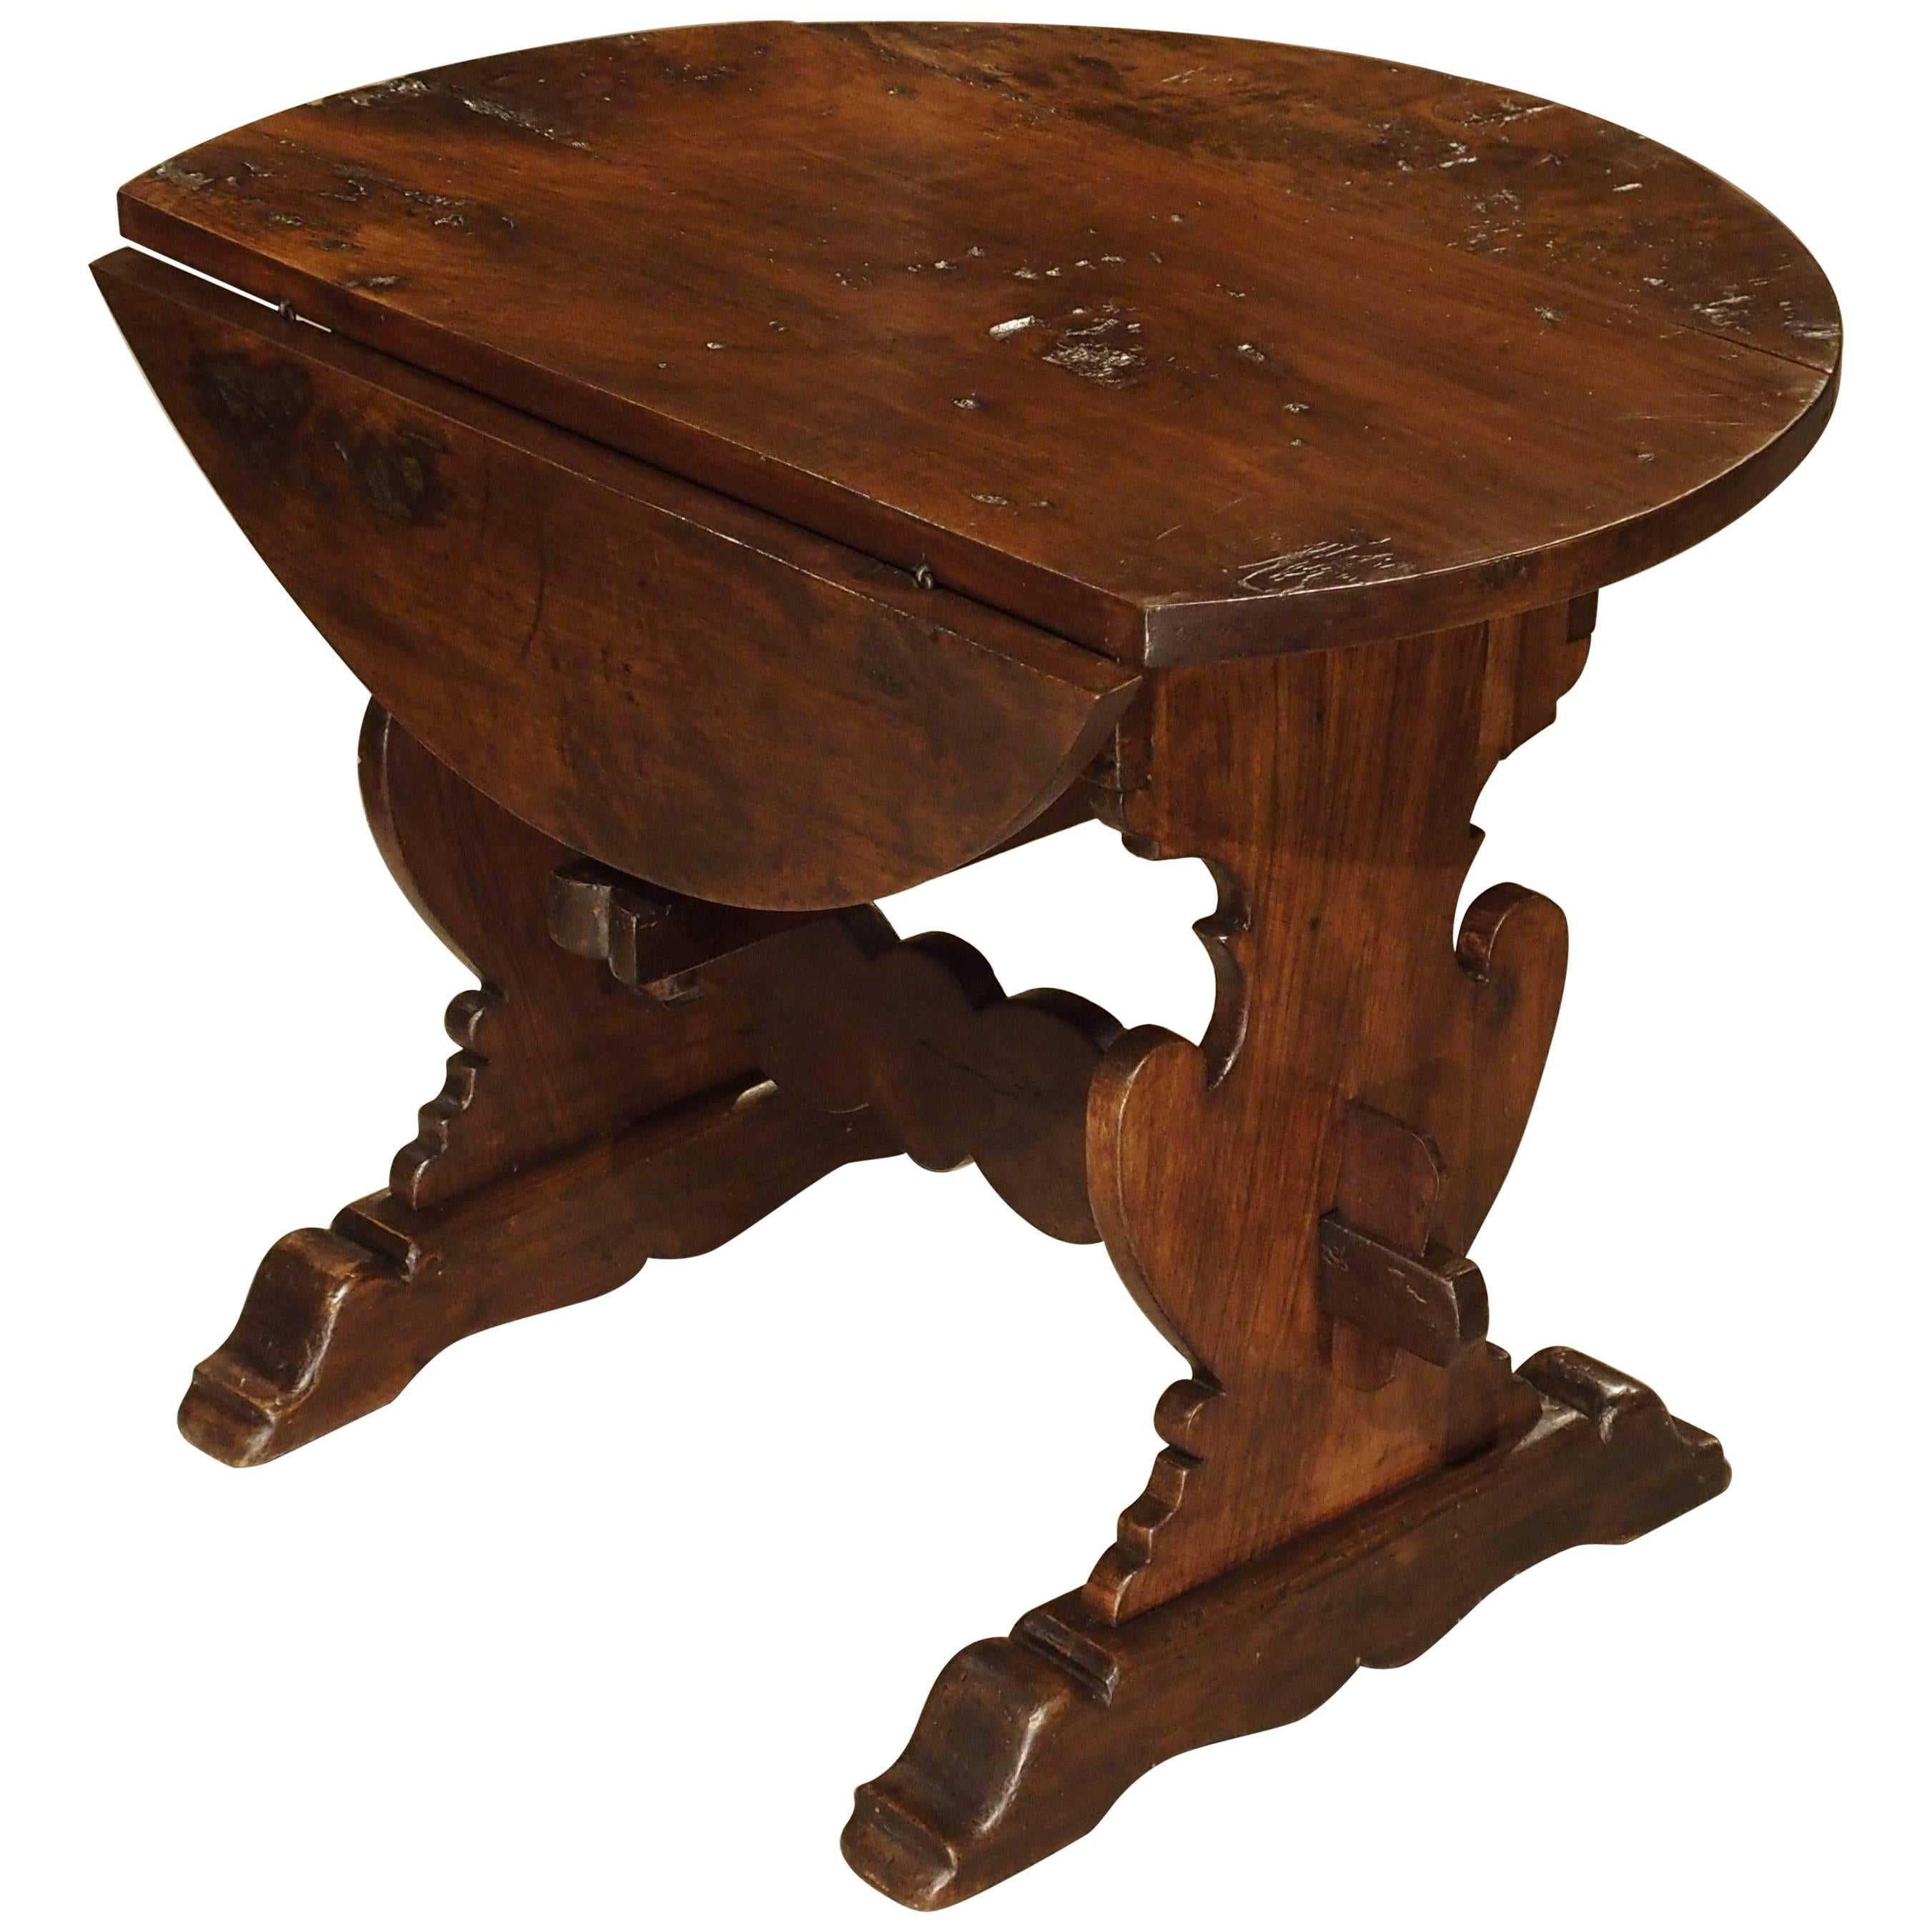 Early 1800s Italian Walnut Wood Drop-Leaf Side Table